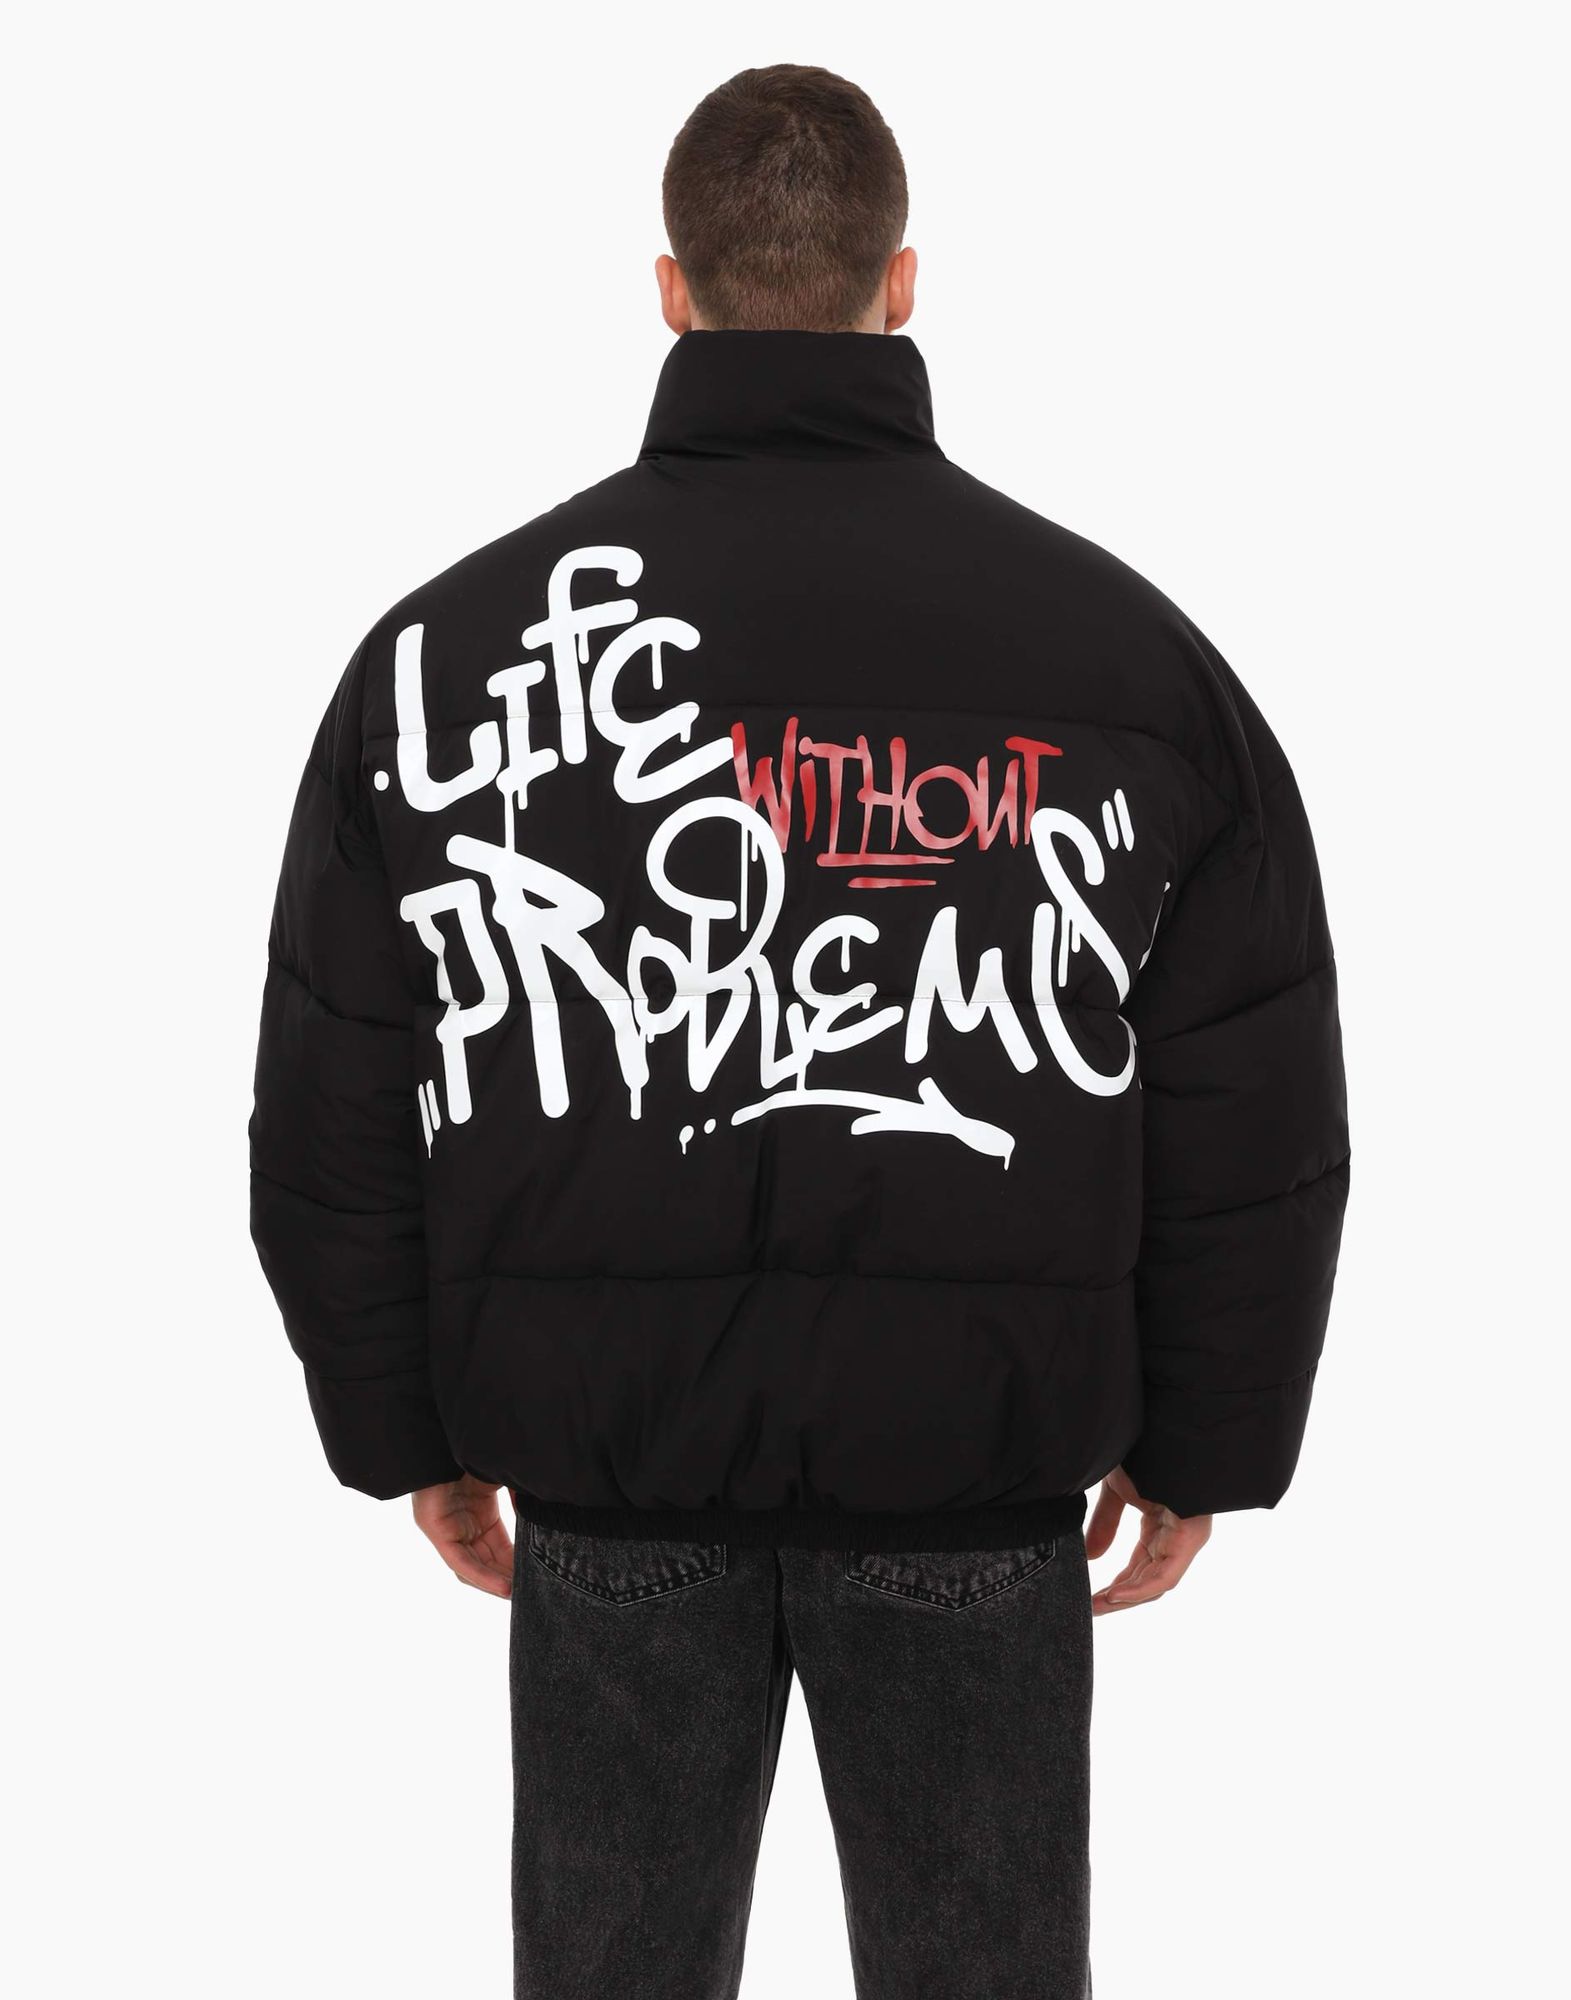 Чёрная куртка с синтепухом и граффити-принтом-3